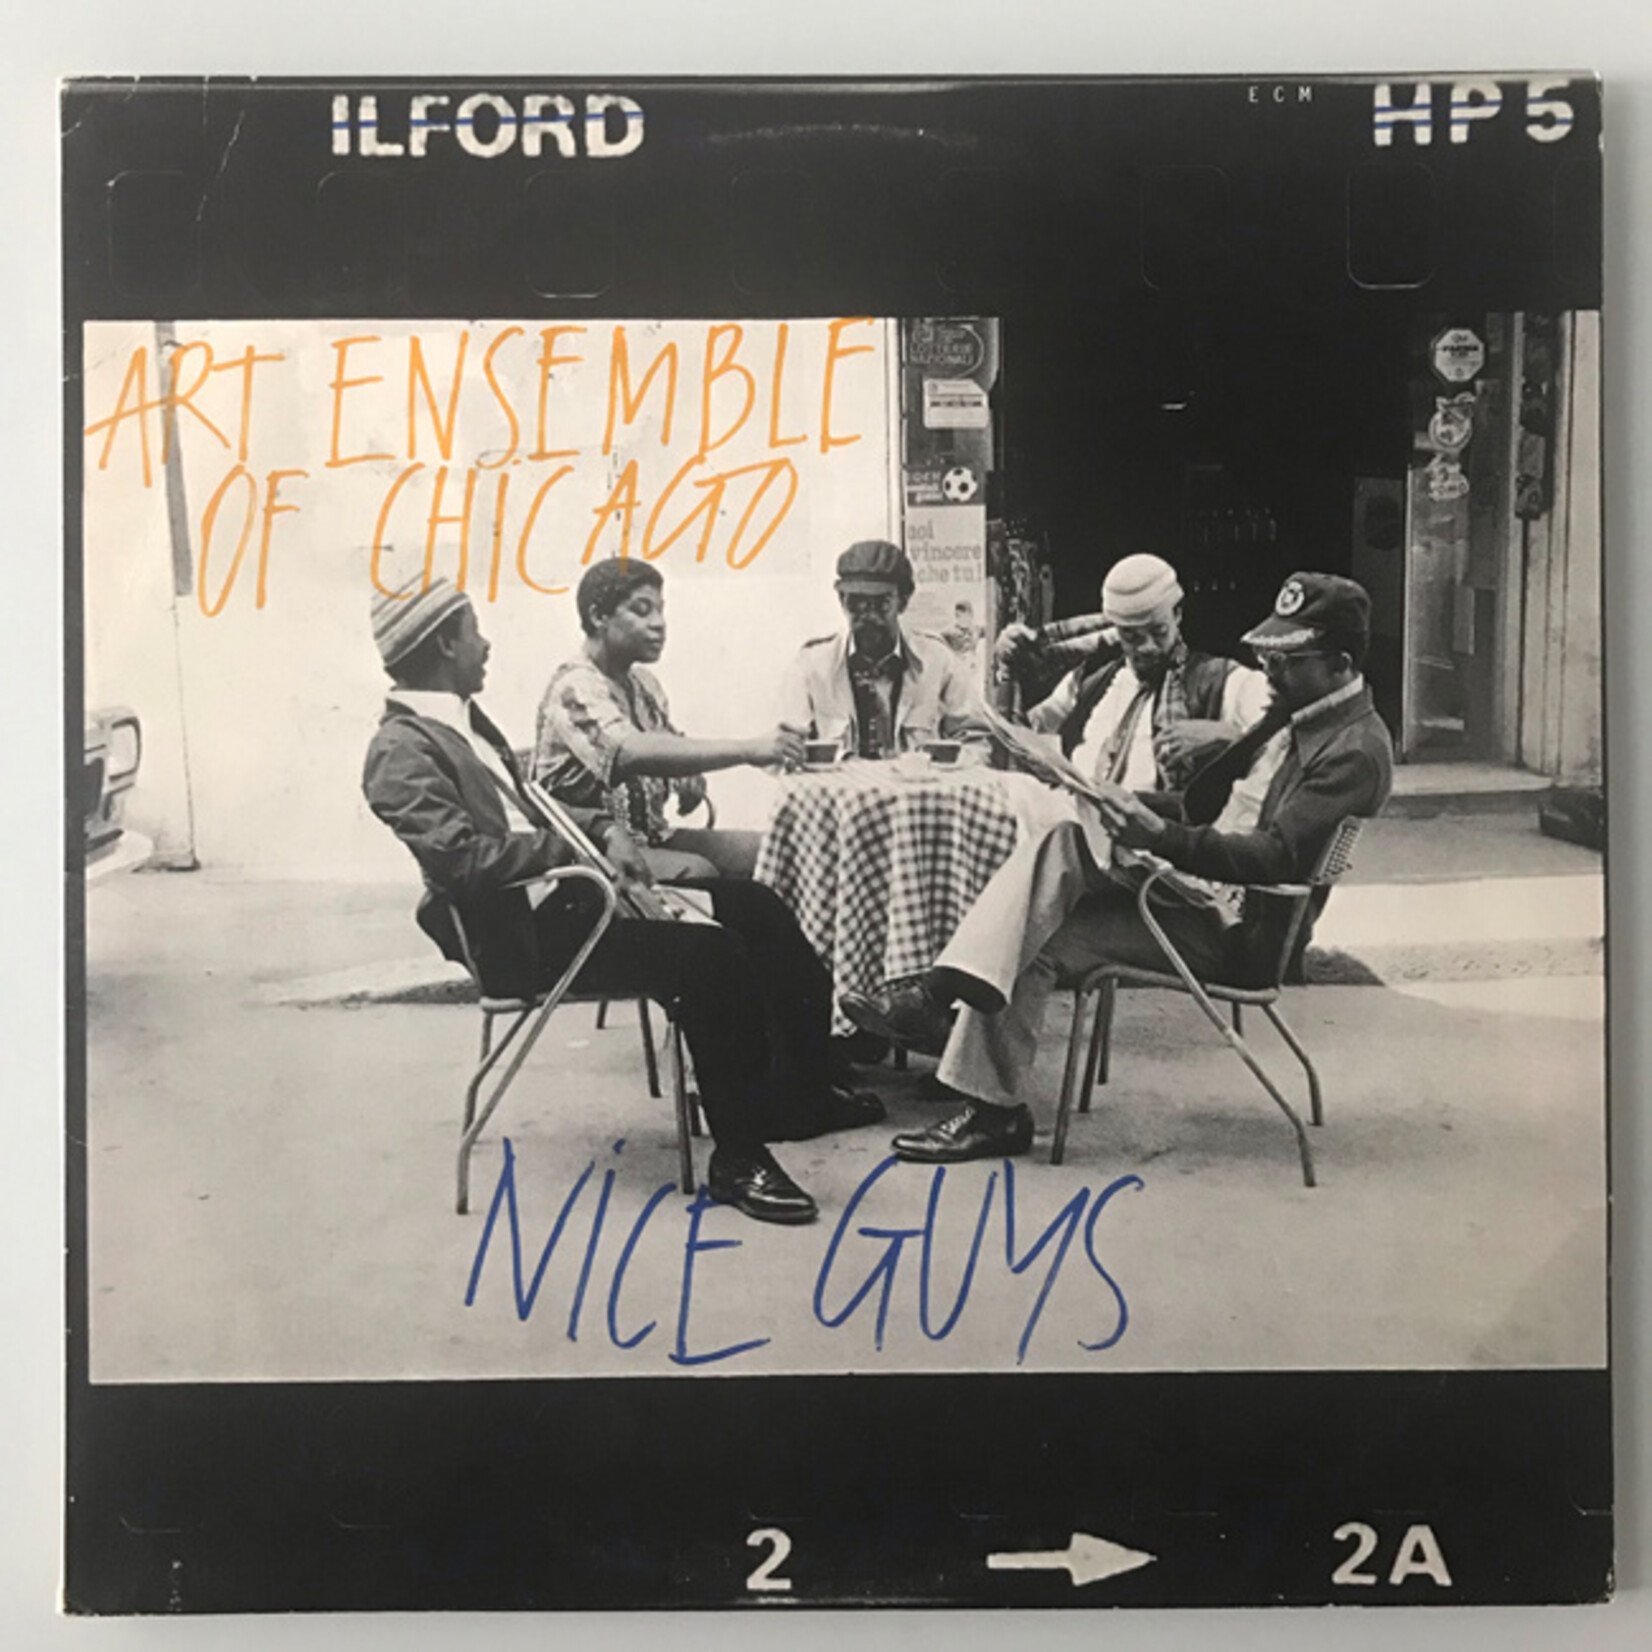 Art Ensemble of Chicago - Nice Guys - Vinyl LP (USED)